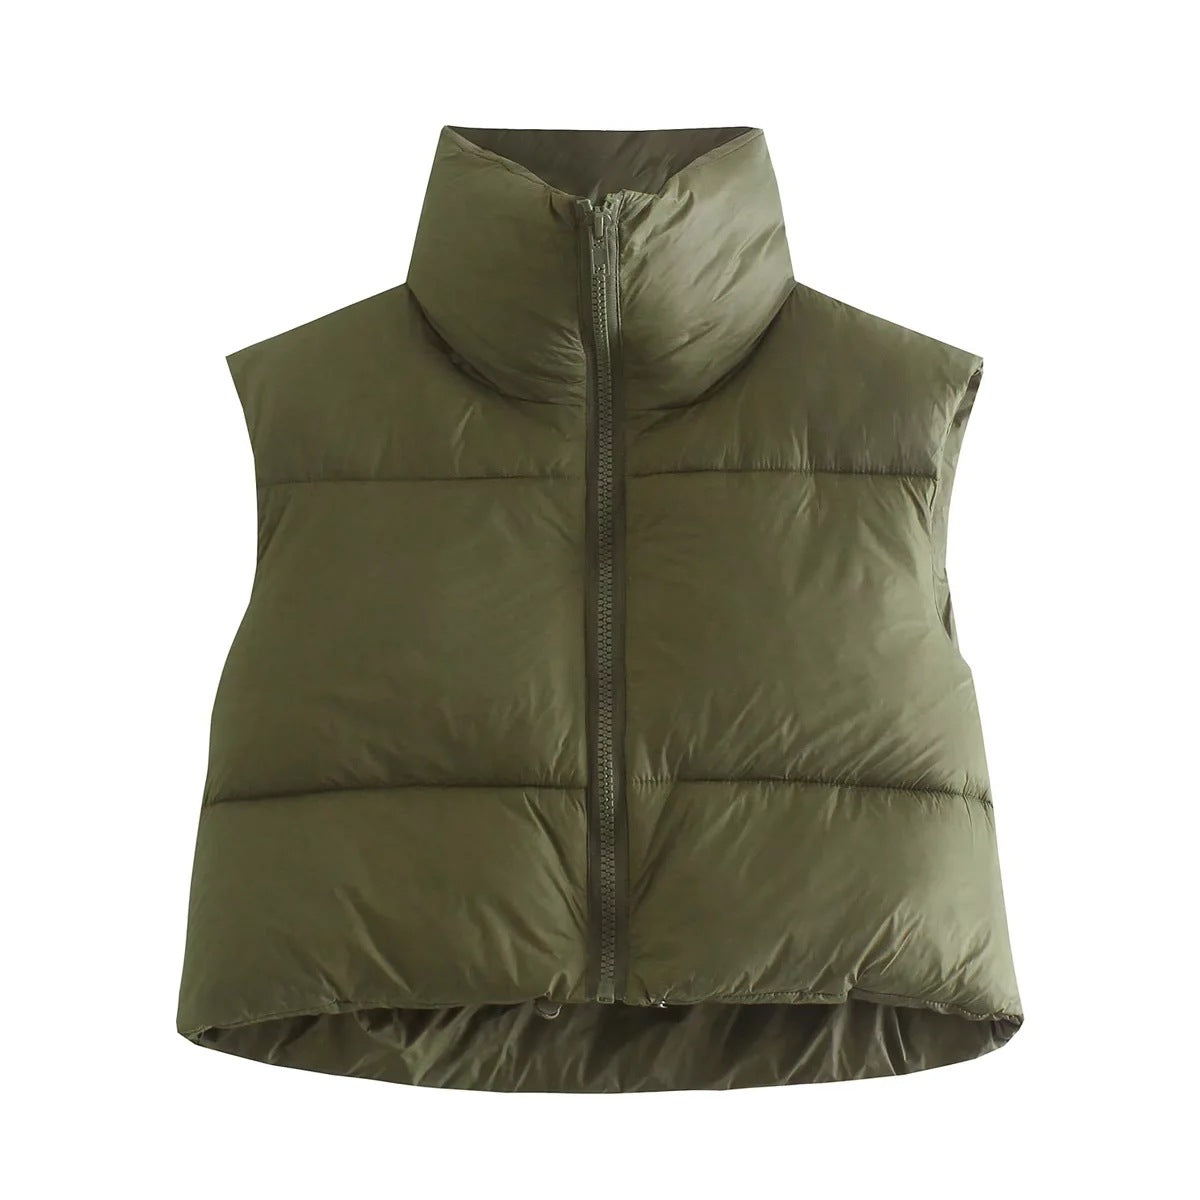 Sasha’s Sleeveless jacket - S / Army Green